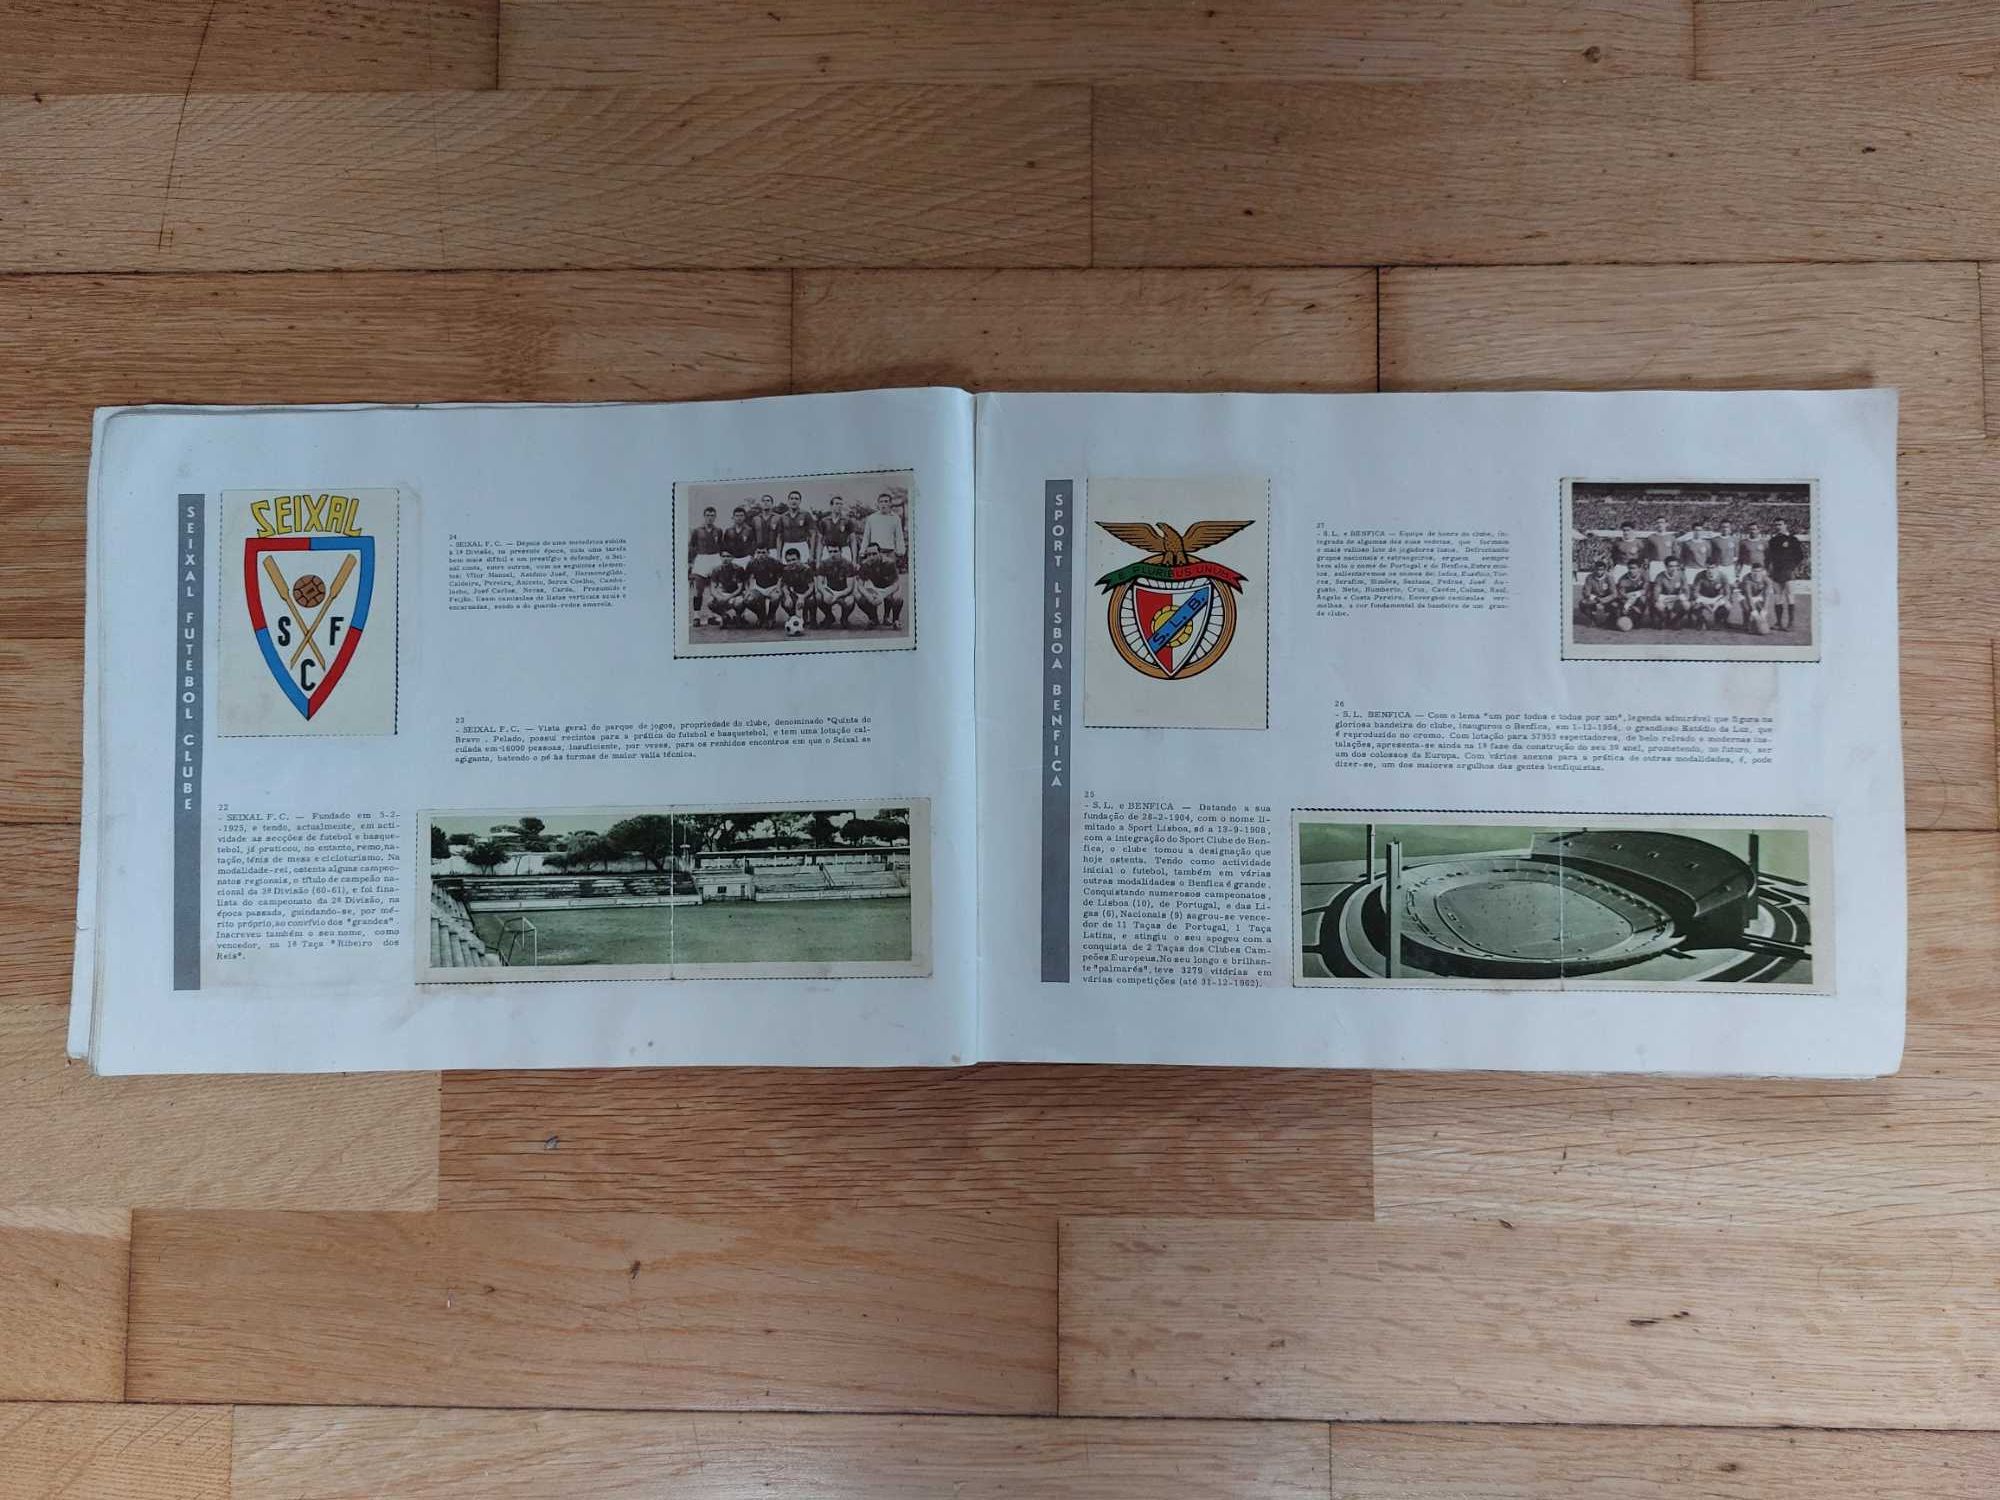 Caderneta de cromos "Clubes da 1ª e 2ª divisões 1963/1964 - Completa